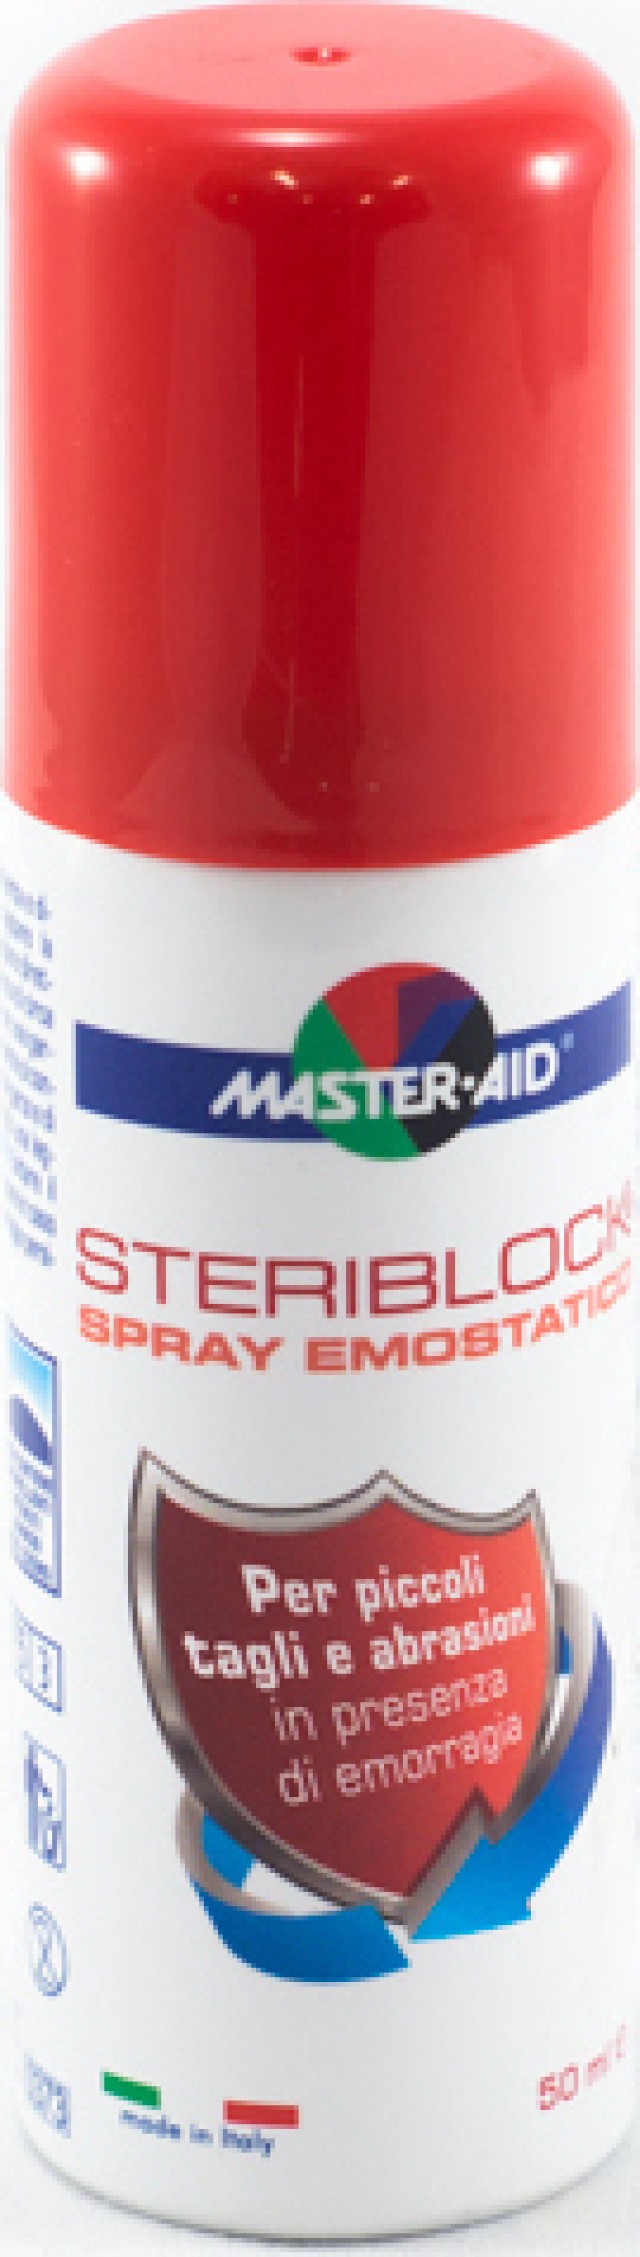 Master Aid Steriblock Spray Emostatico Αιμοστατικό Σπρέι 50ml